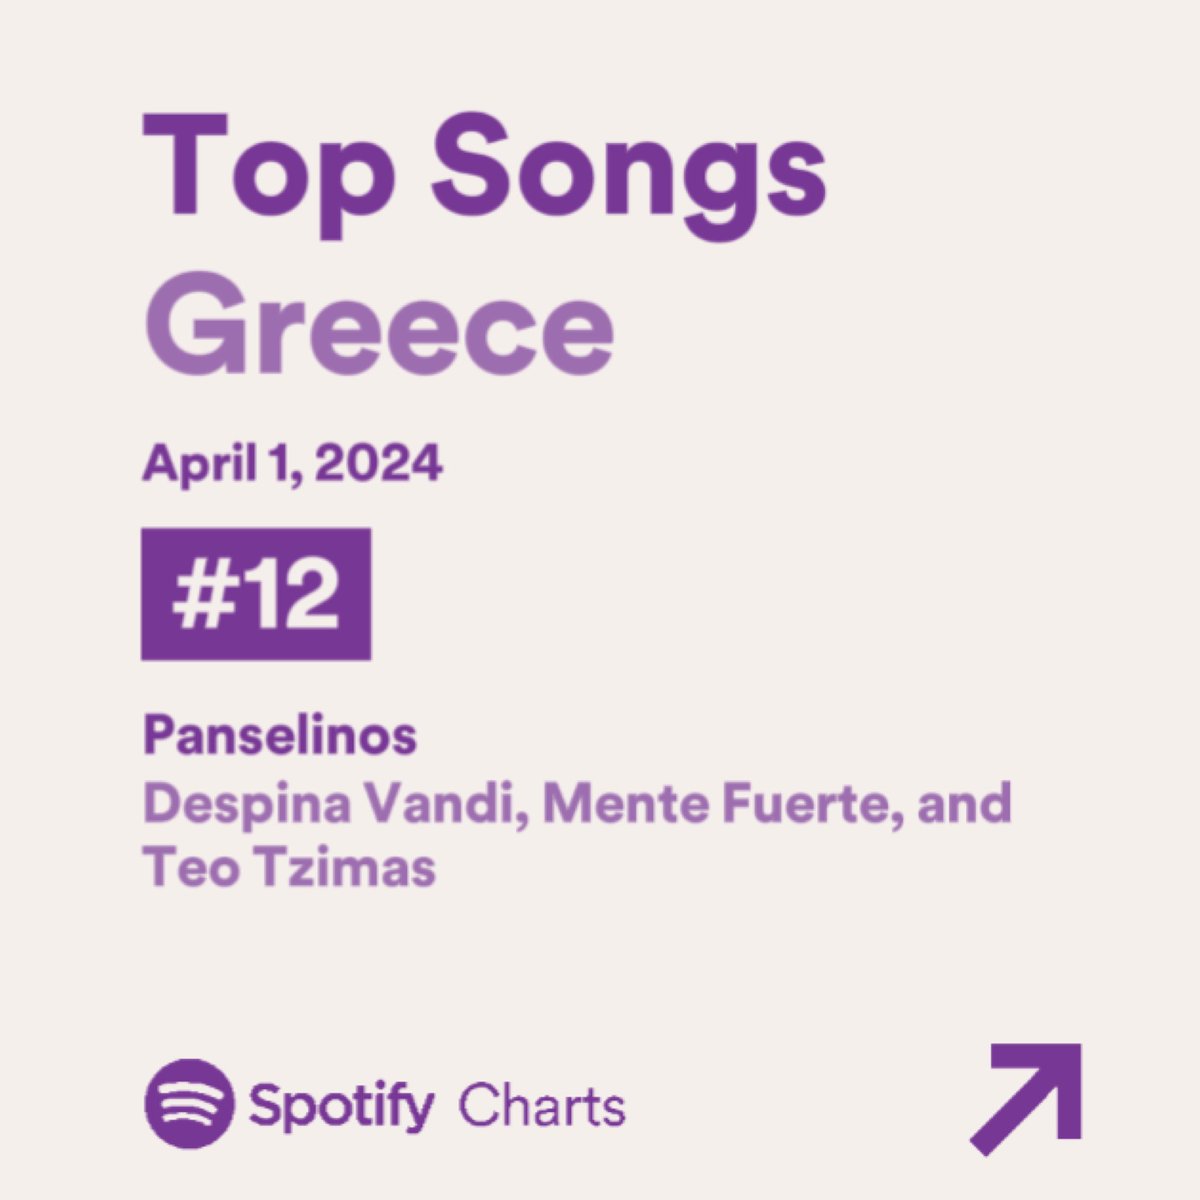 Η «Πανσέληνος» σημειώνει νέο peak στο Spotify Daily Chart στη θέση #12 🔝 Είχε την καλύτερη streaming μέρα στην Ελλάδα (1/4) με 59.330 streams ‼️❤️‍🔥 @Desp1naVandi